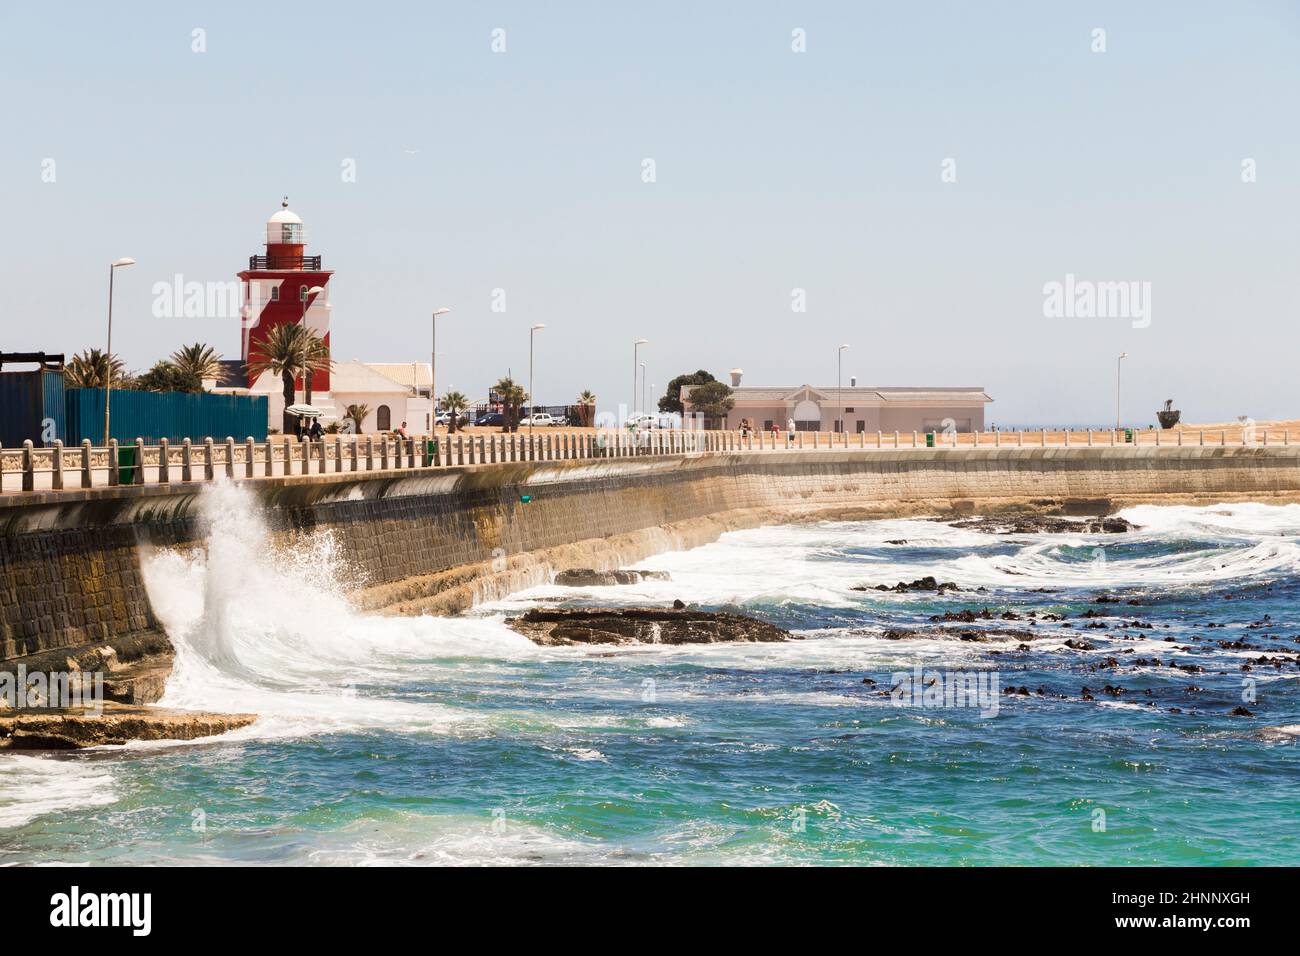 Les vagues rebondissent contre la protection contre les vagues, brise-lames, Sea point Cape Town. Banque D'Images